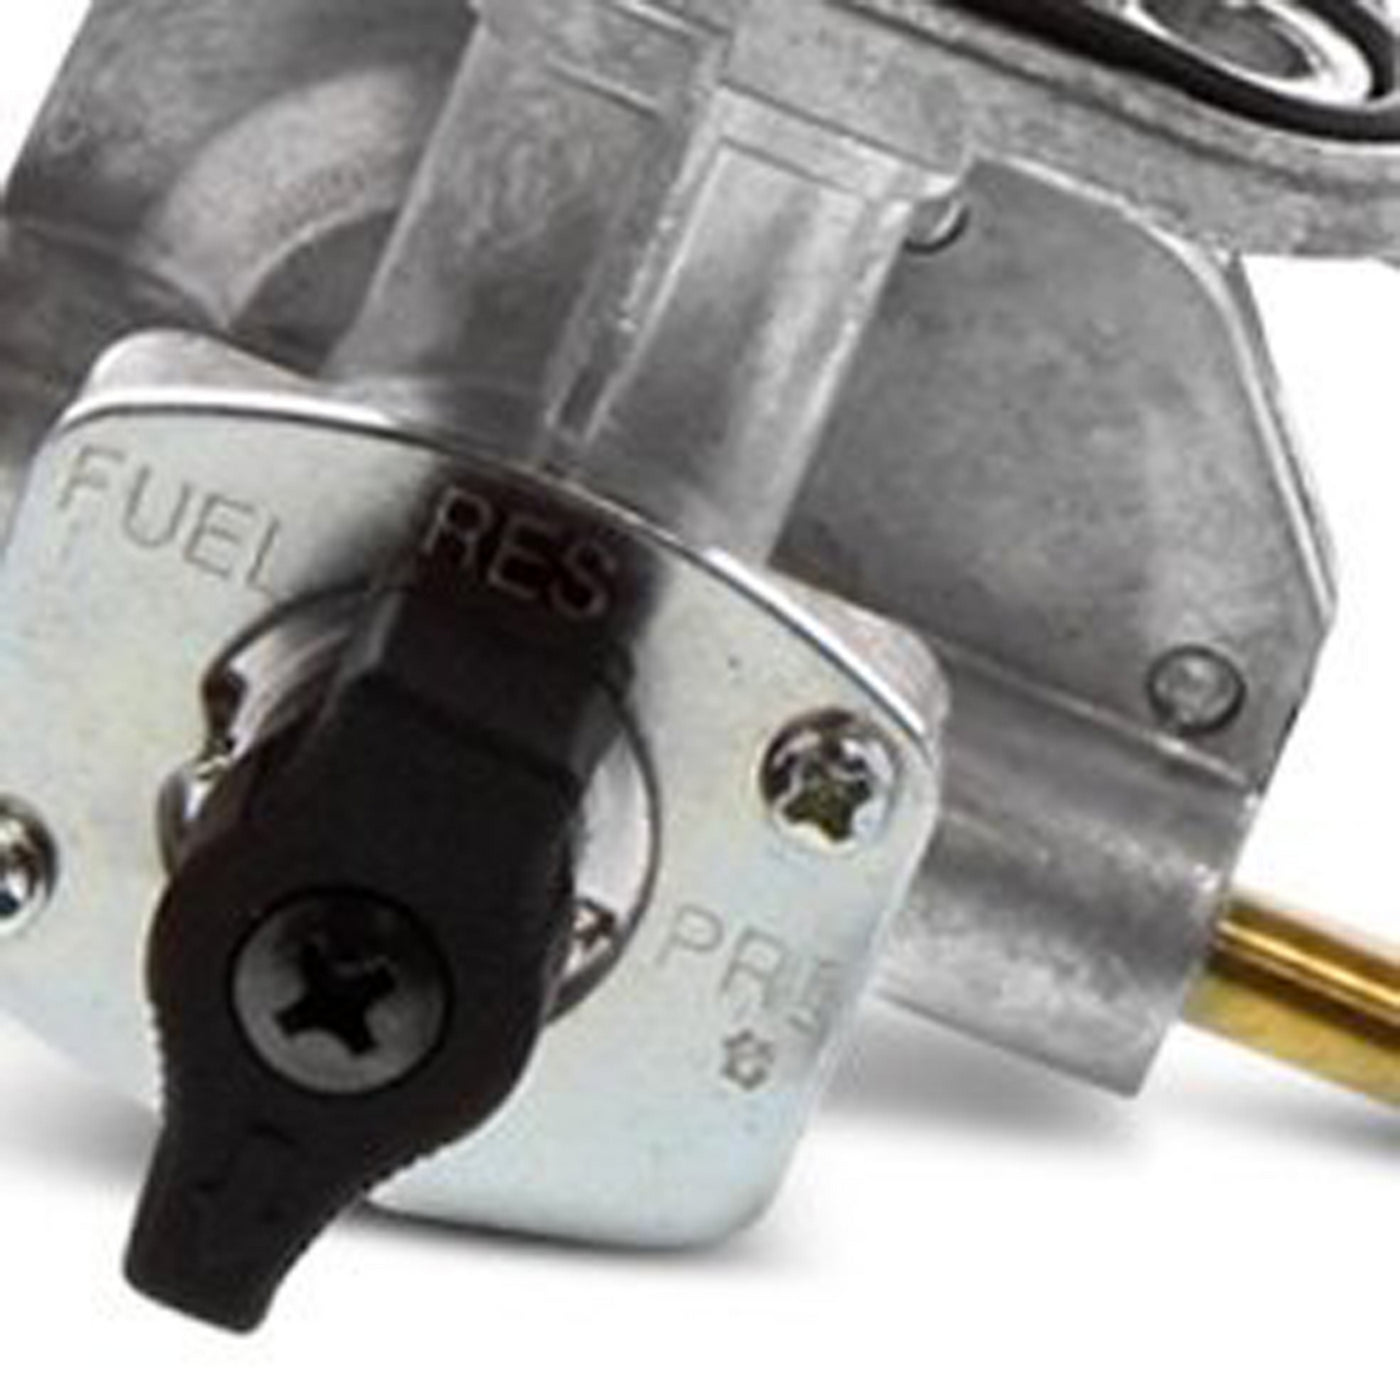 Fuel Star FS101-0128 Fuel Valve Kit #FS101-0128